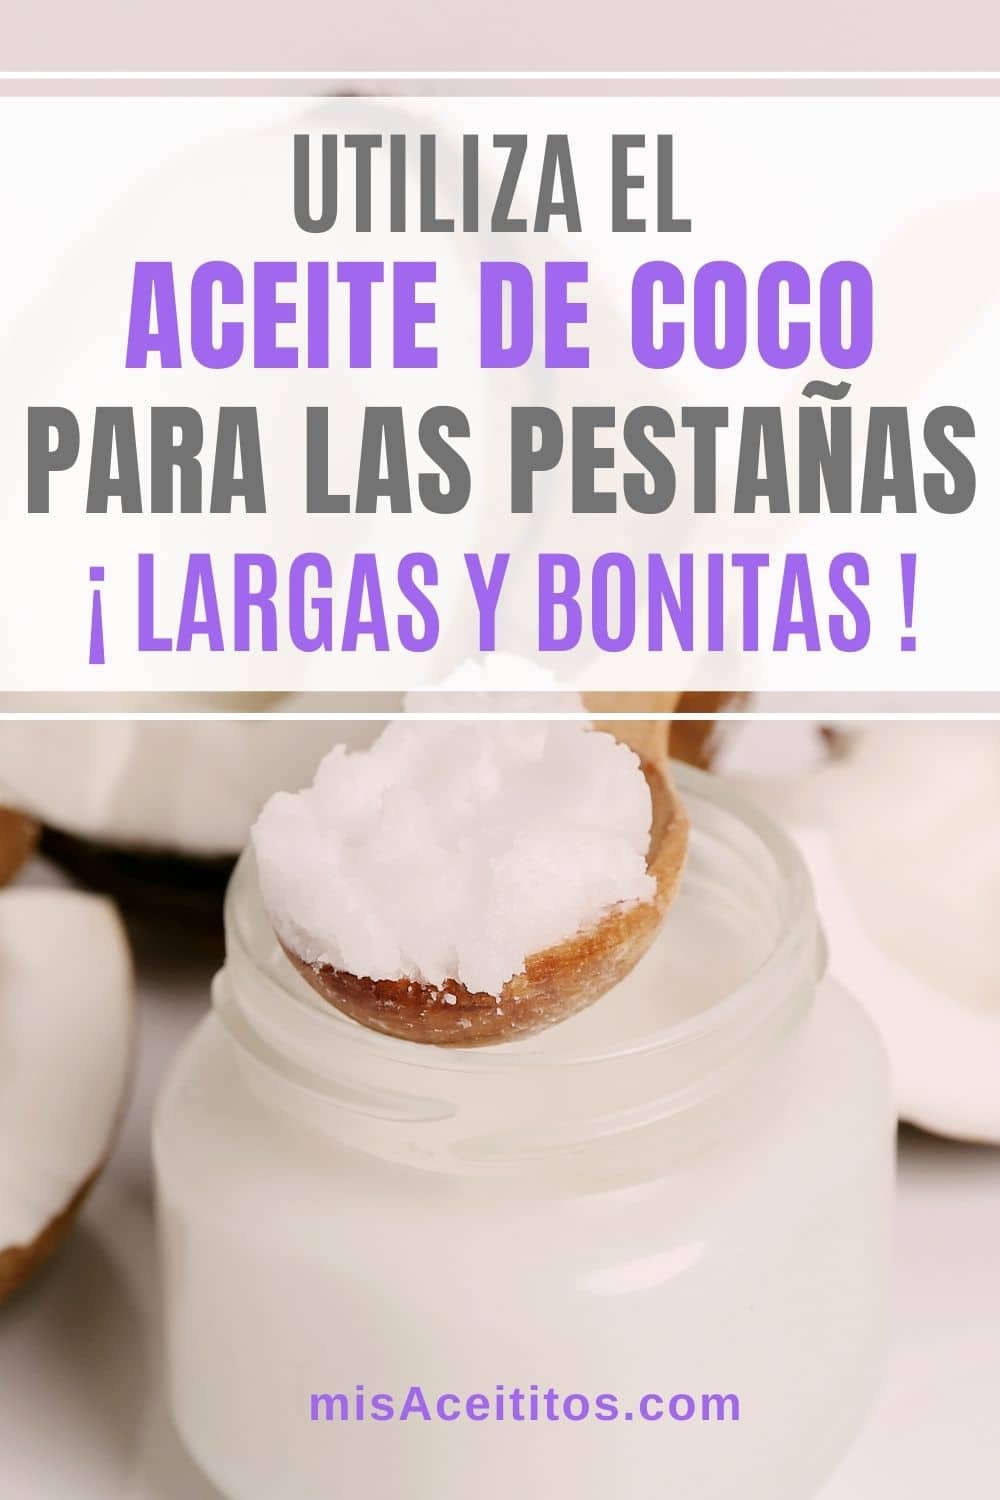 Aceite de Coco Para Las Pestañas: Más Densas, Largas Y Bonitas